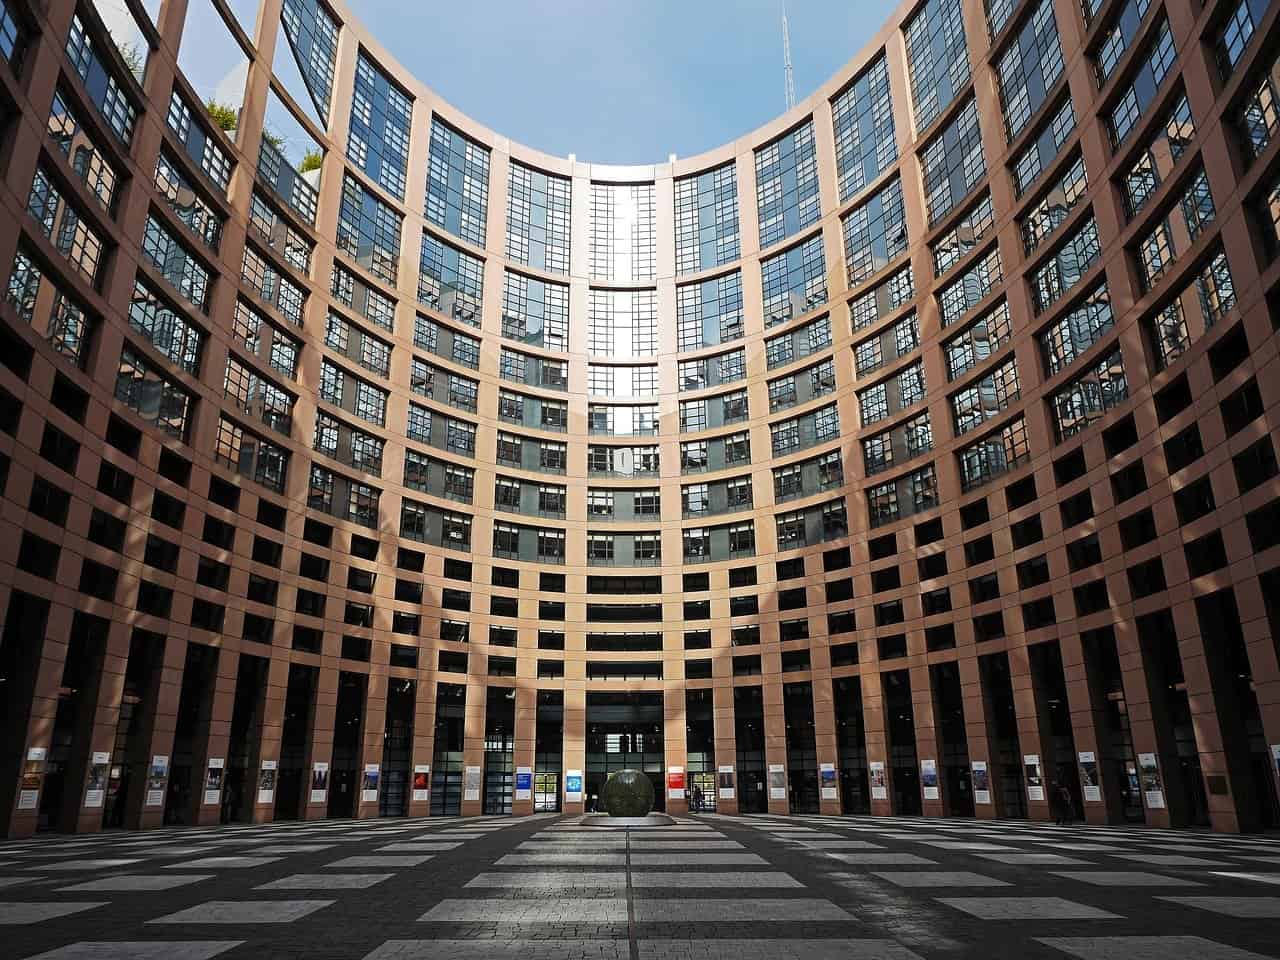 parlement europeen